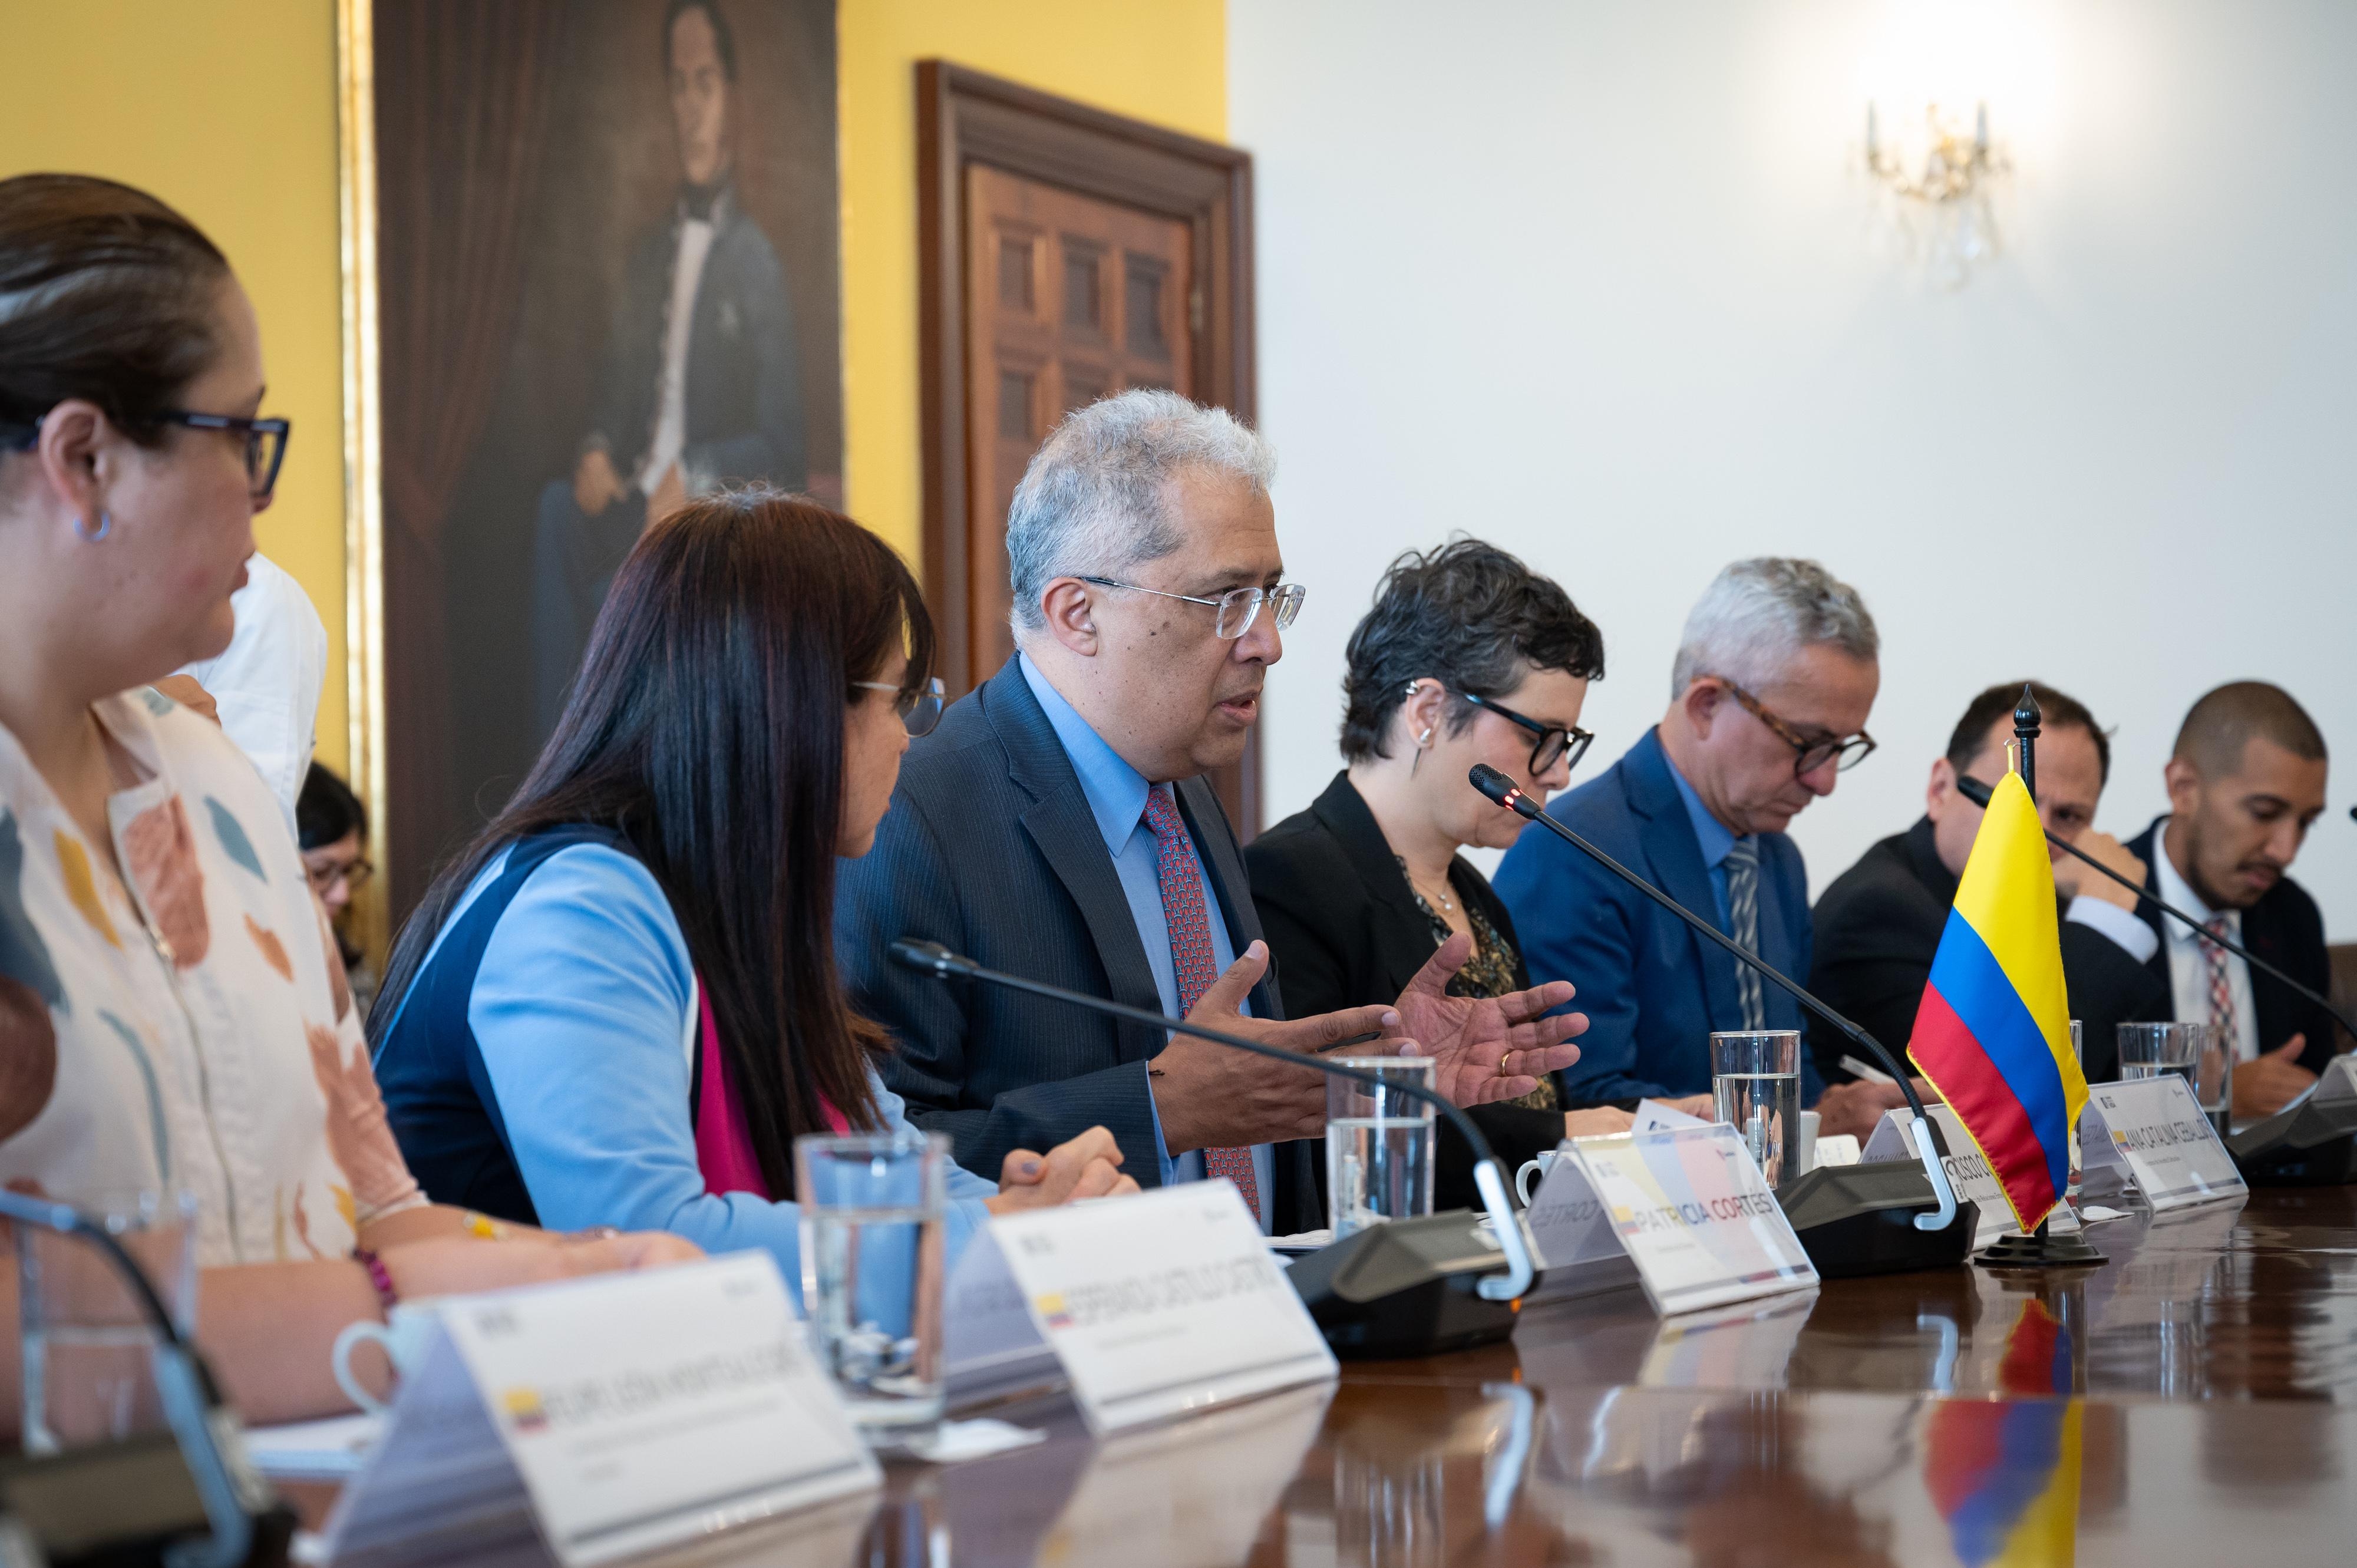 Colombia y Finlandia buscan fortalecer la cooperación en asuntos estratégicos bilaterales